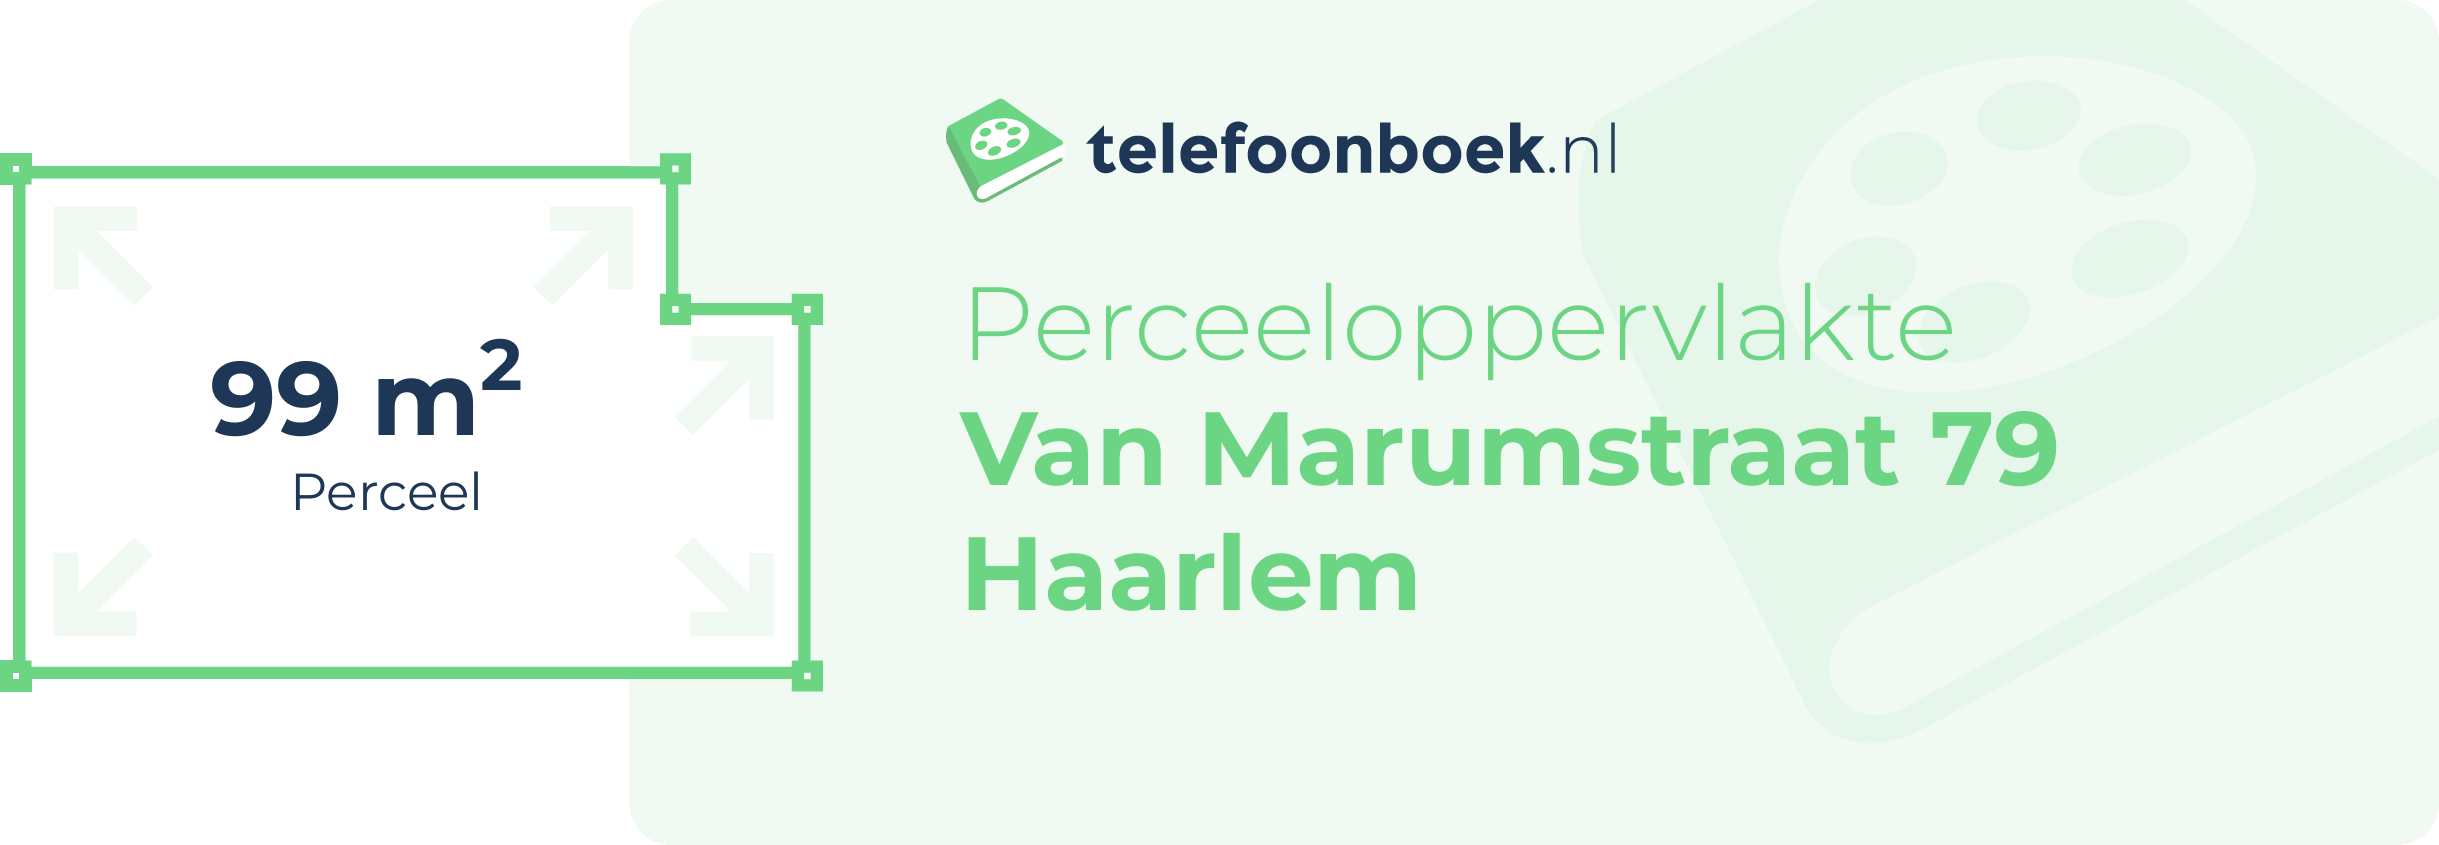 Perceeloppervlakte Van Marumstraat 79 Haarlem